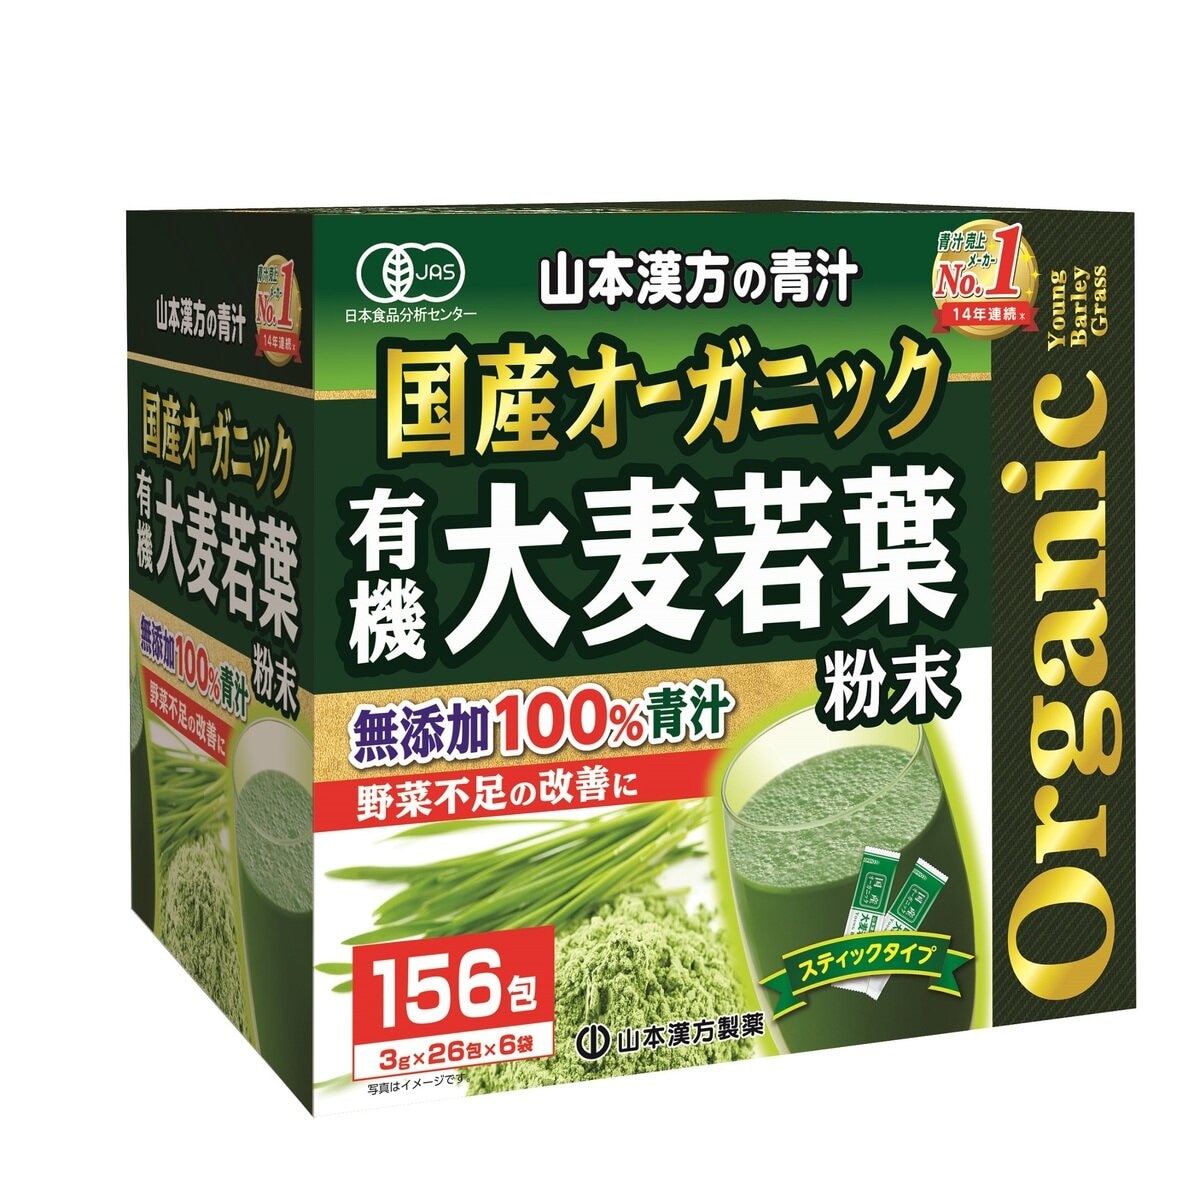 国産 無添加 100% オーガニック 青汁 3g x 156包入 Costco Japan